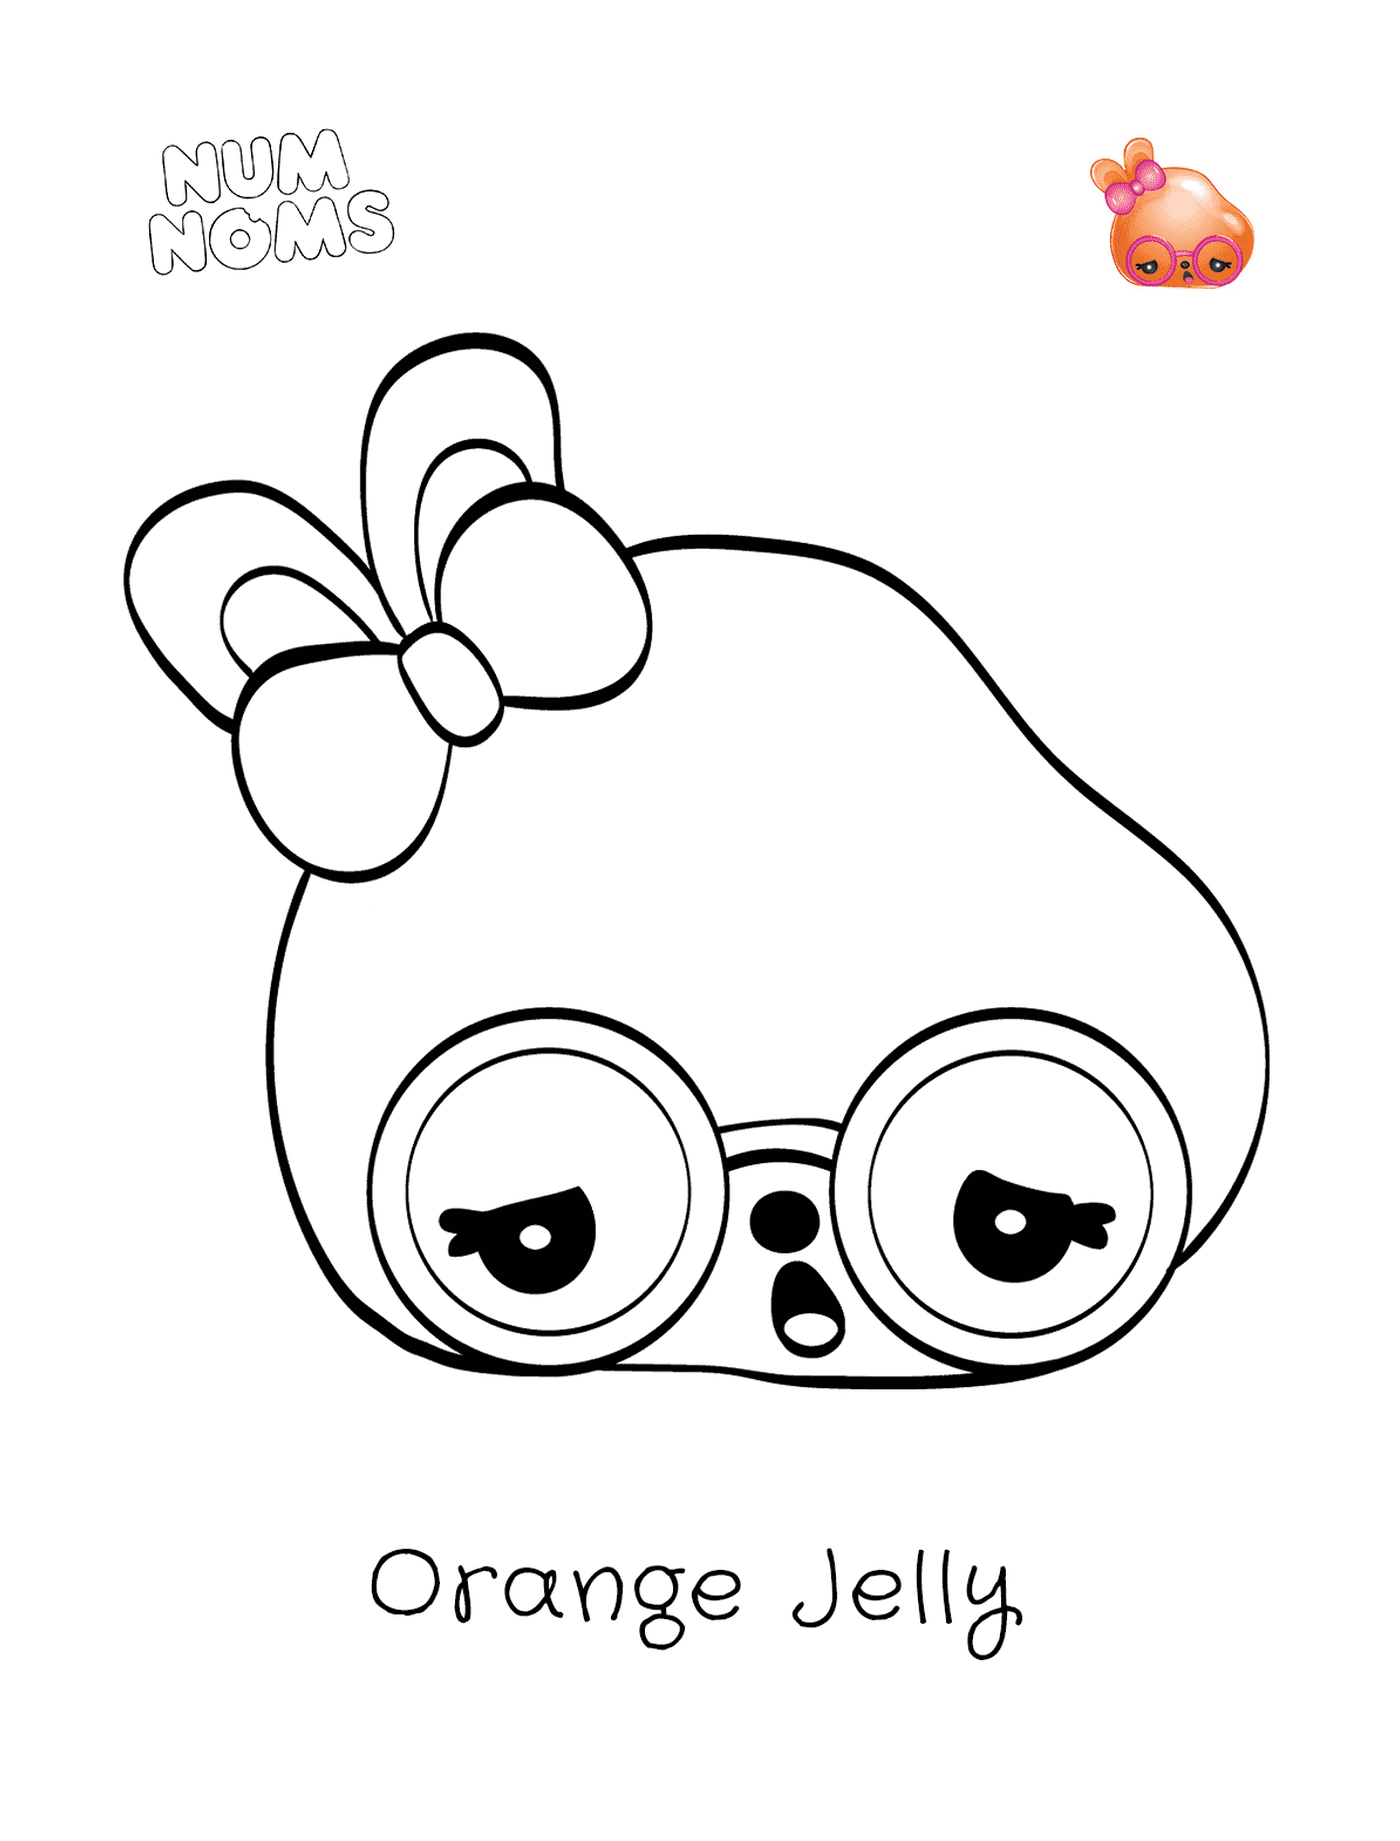   Jelly orange, un personnage rigolo 